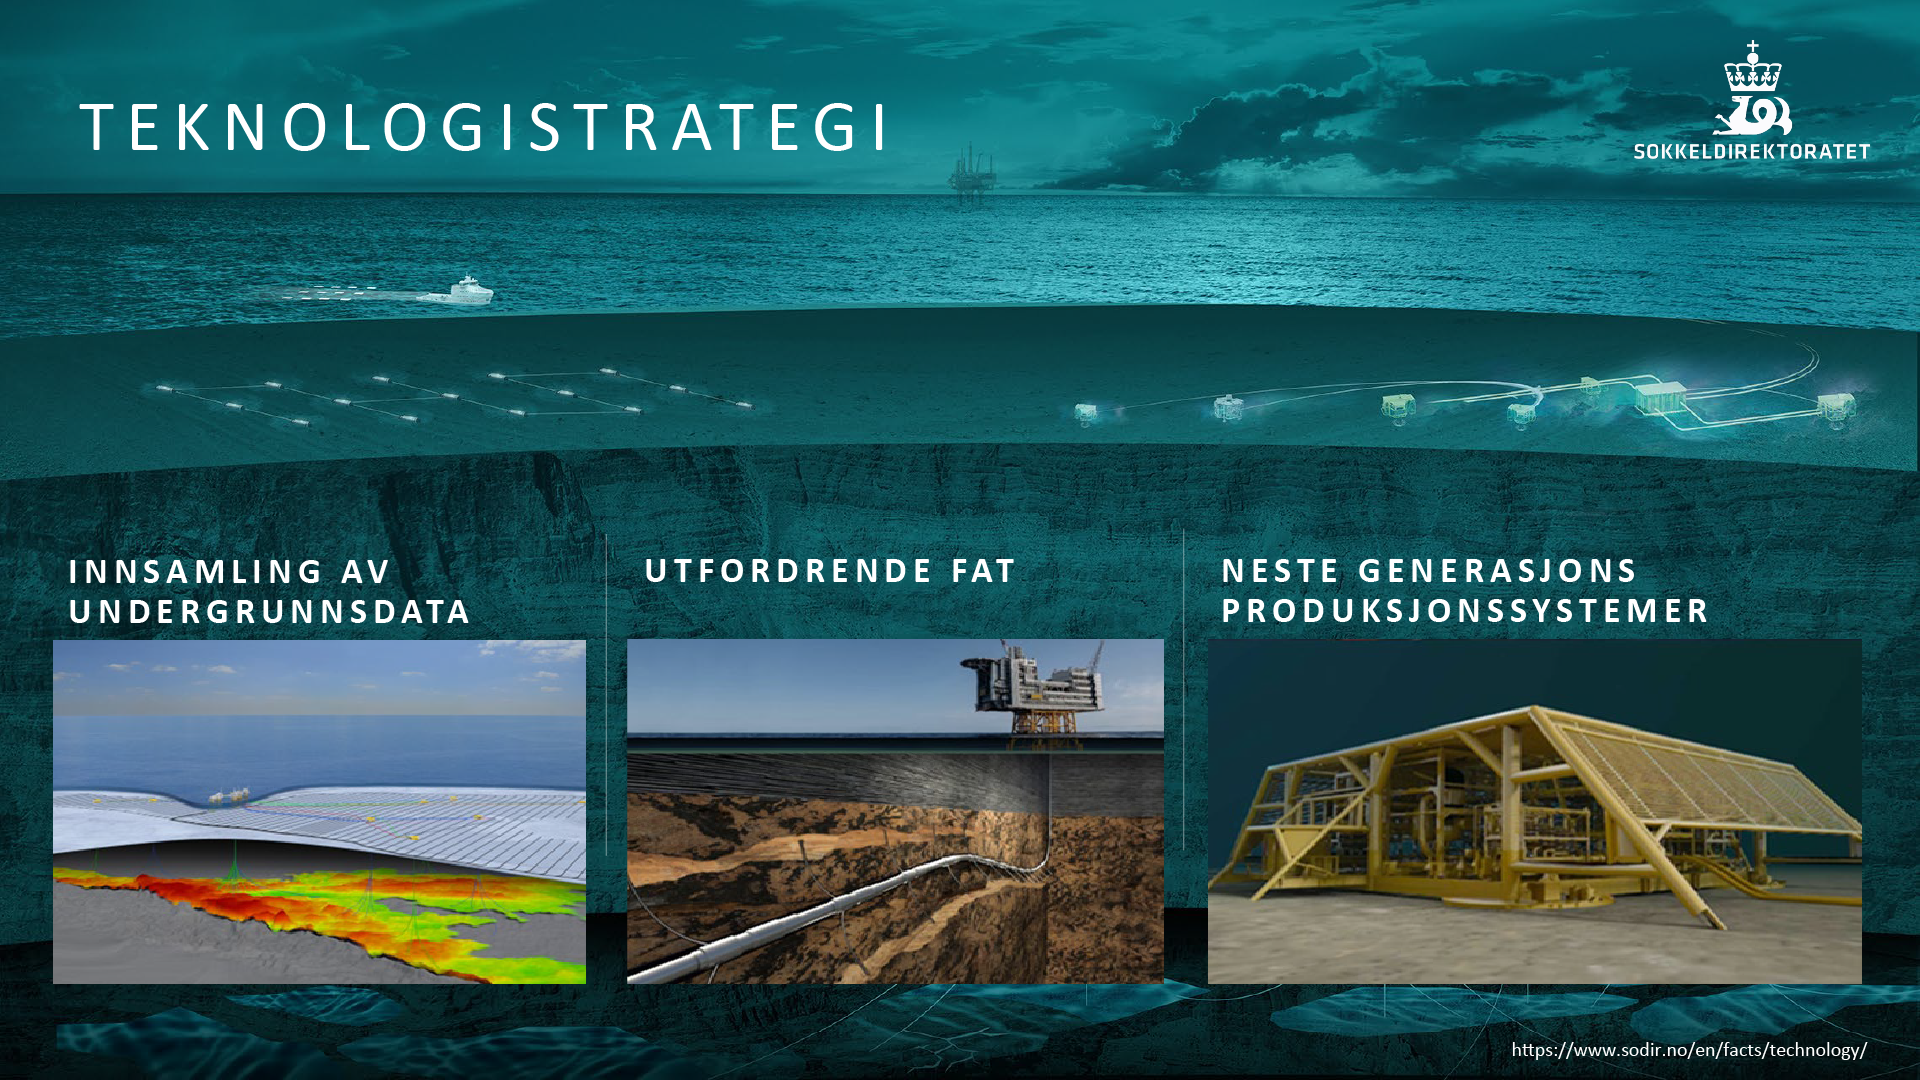 Bilder og tekst som beskriver Sokkeldirektoratets teknologistrategi